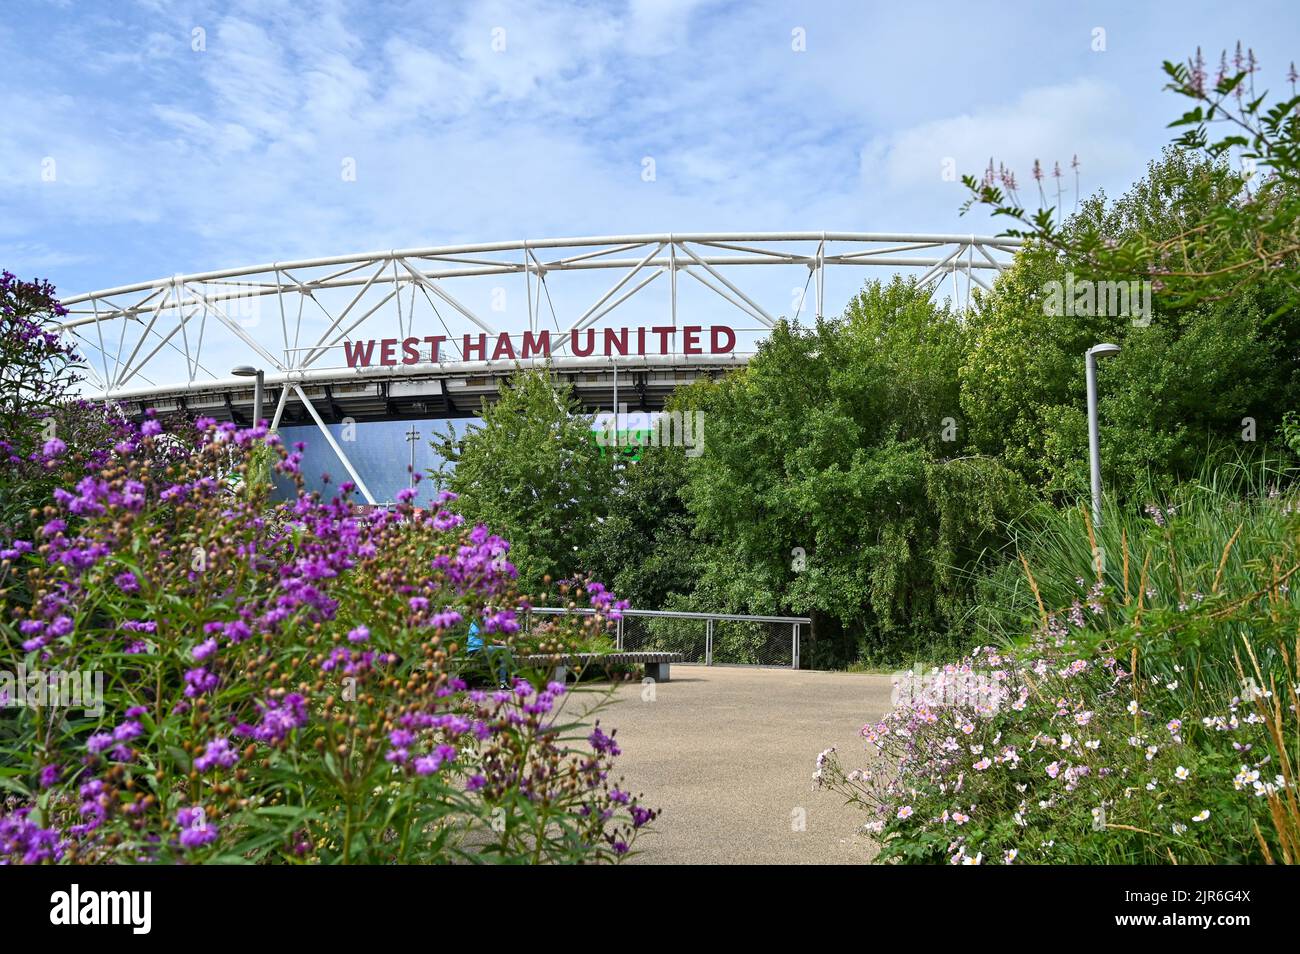 Vue extérieure du stade de Londres où West Ham United joue au football, Royaume-Uni Banque D'Images